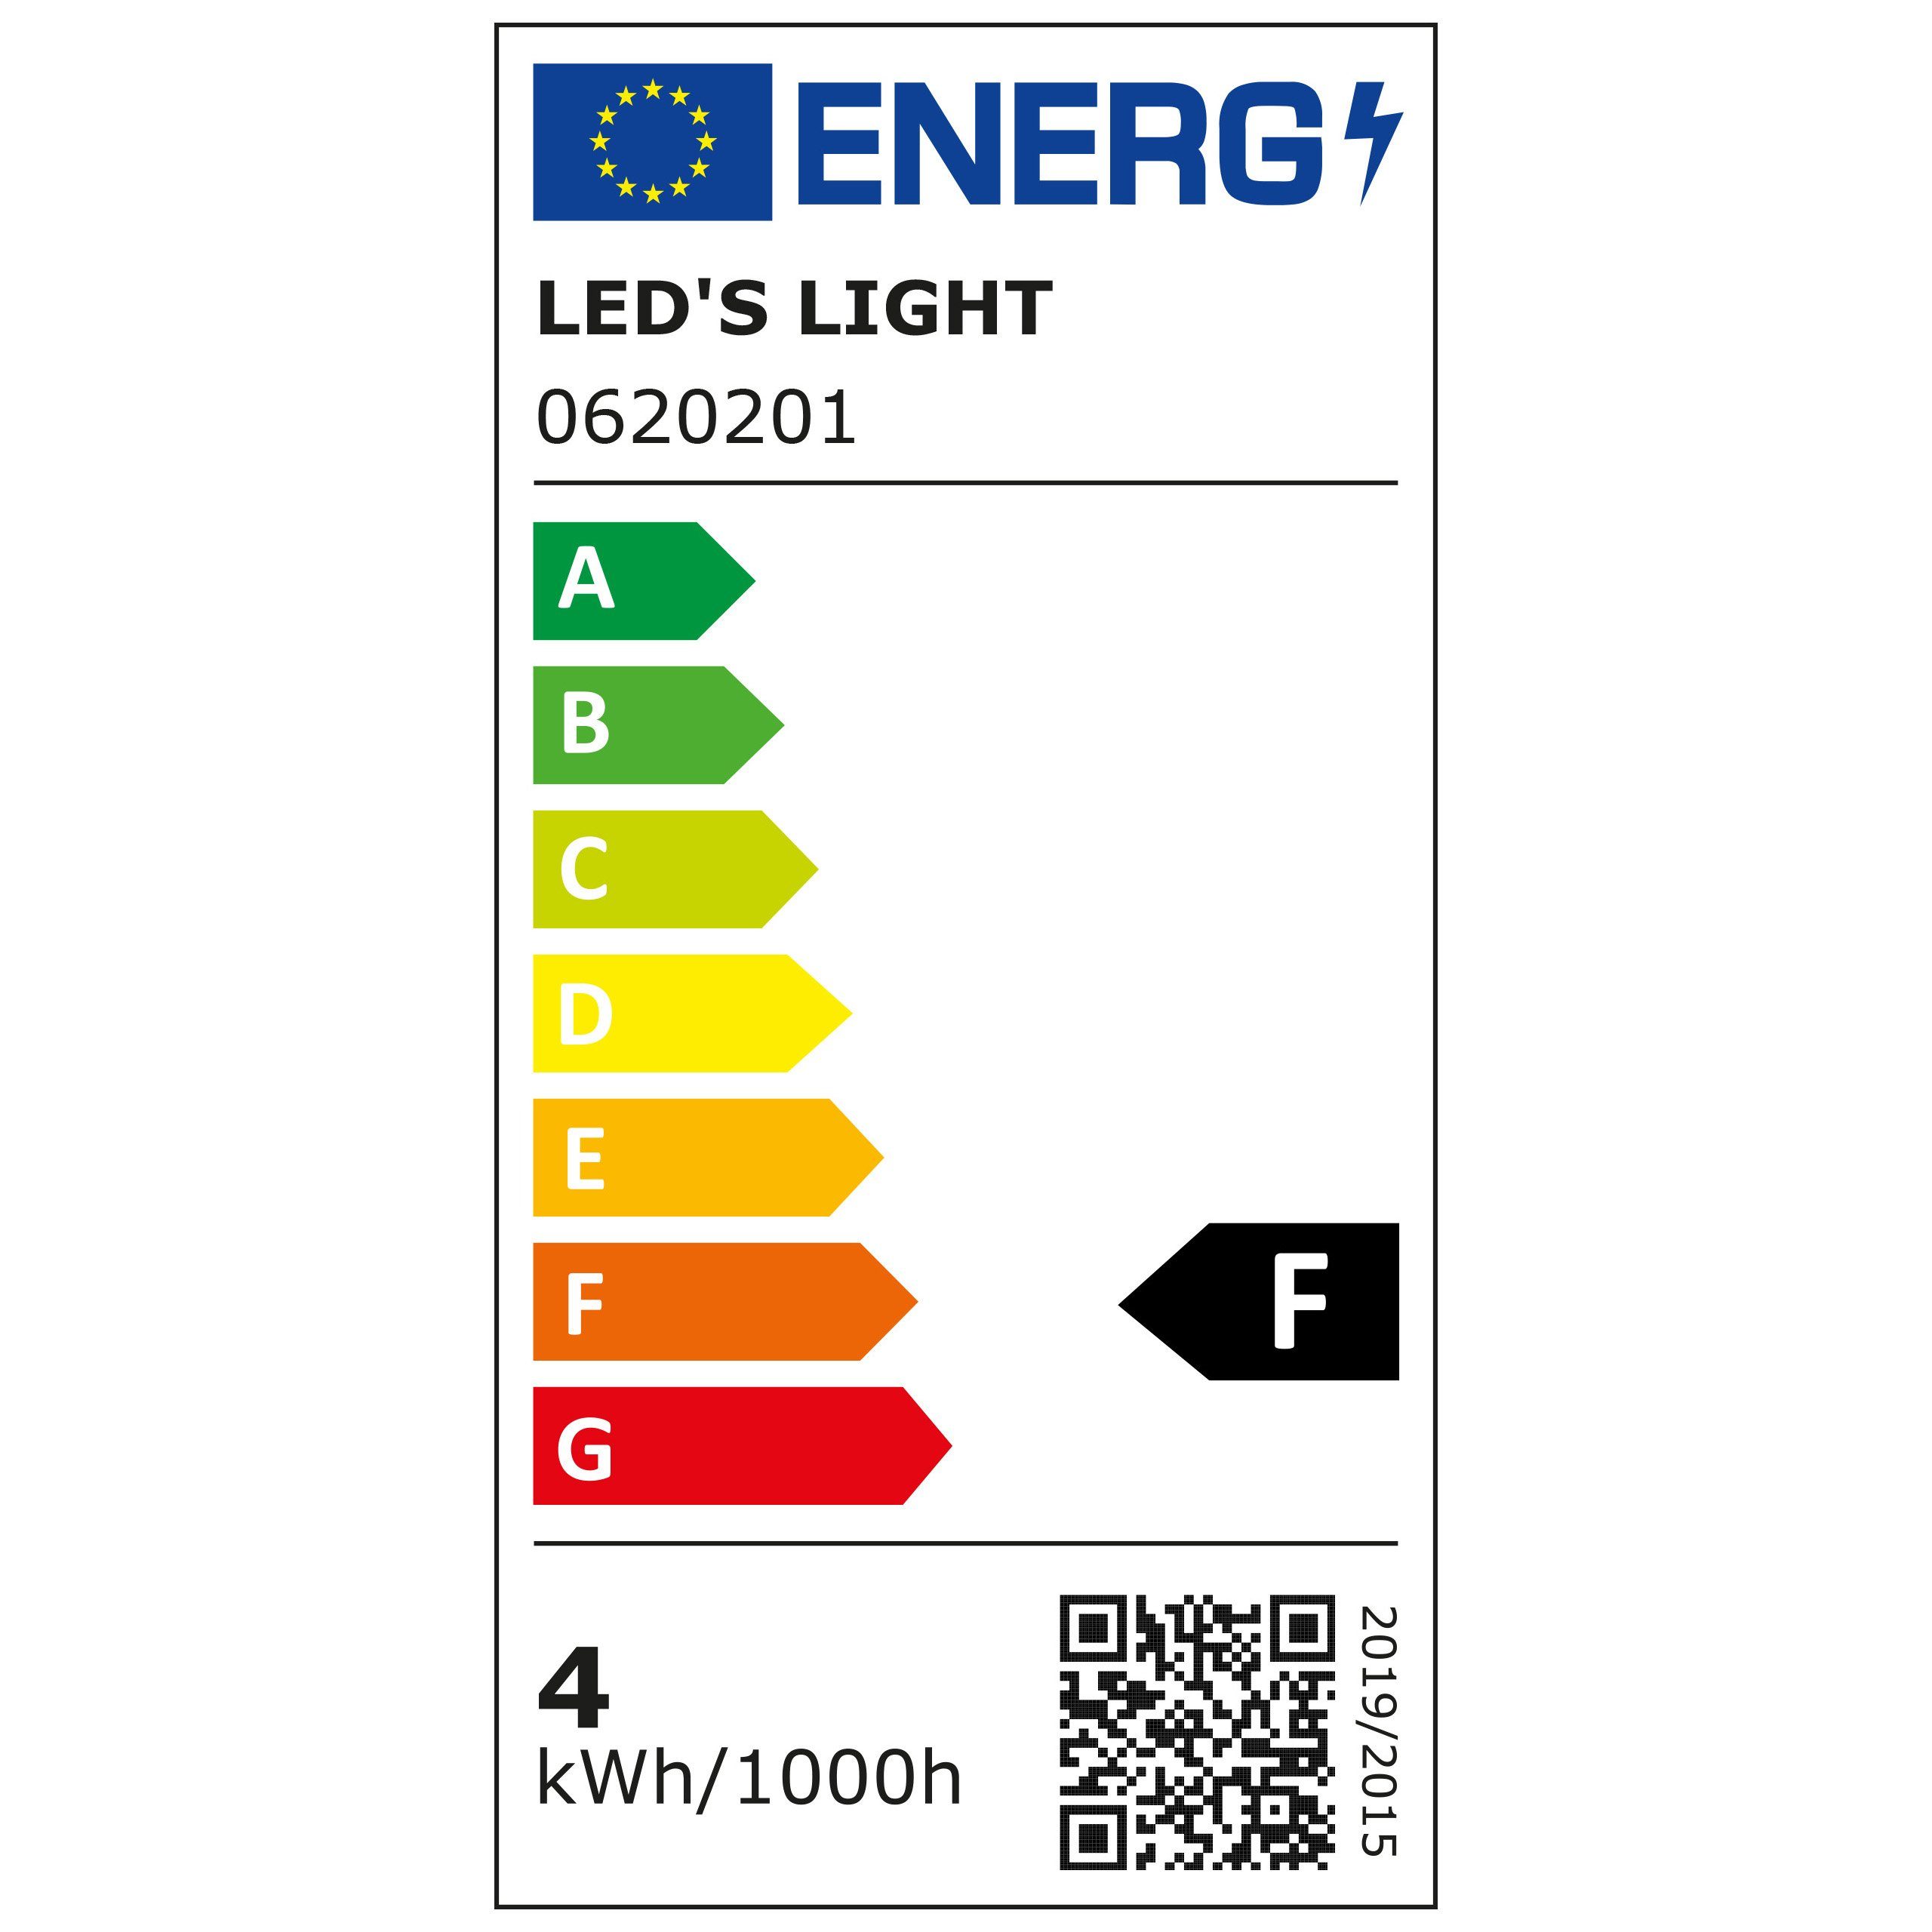 LED's warmweiß für light Farbwiedergabe beste CRI97 LED Kapsel, Klar T30 E27, LED-Leuchtmittel 0620201 4W E27